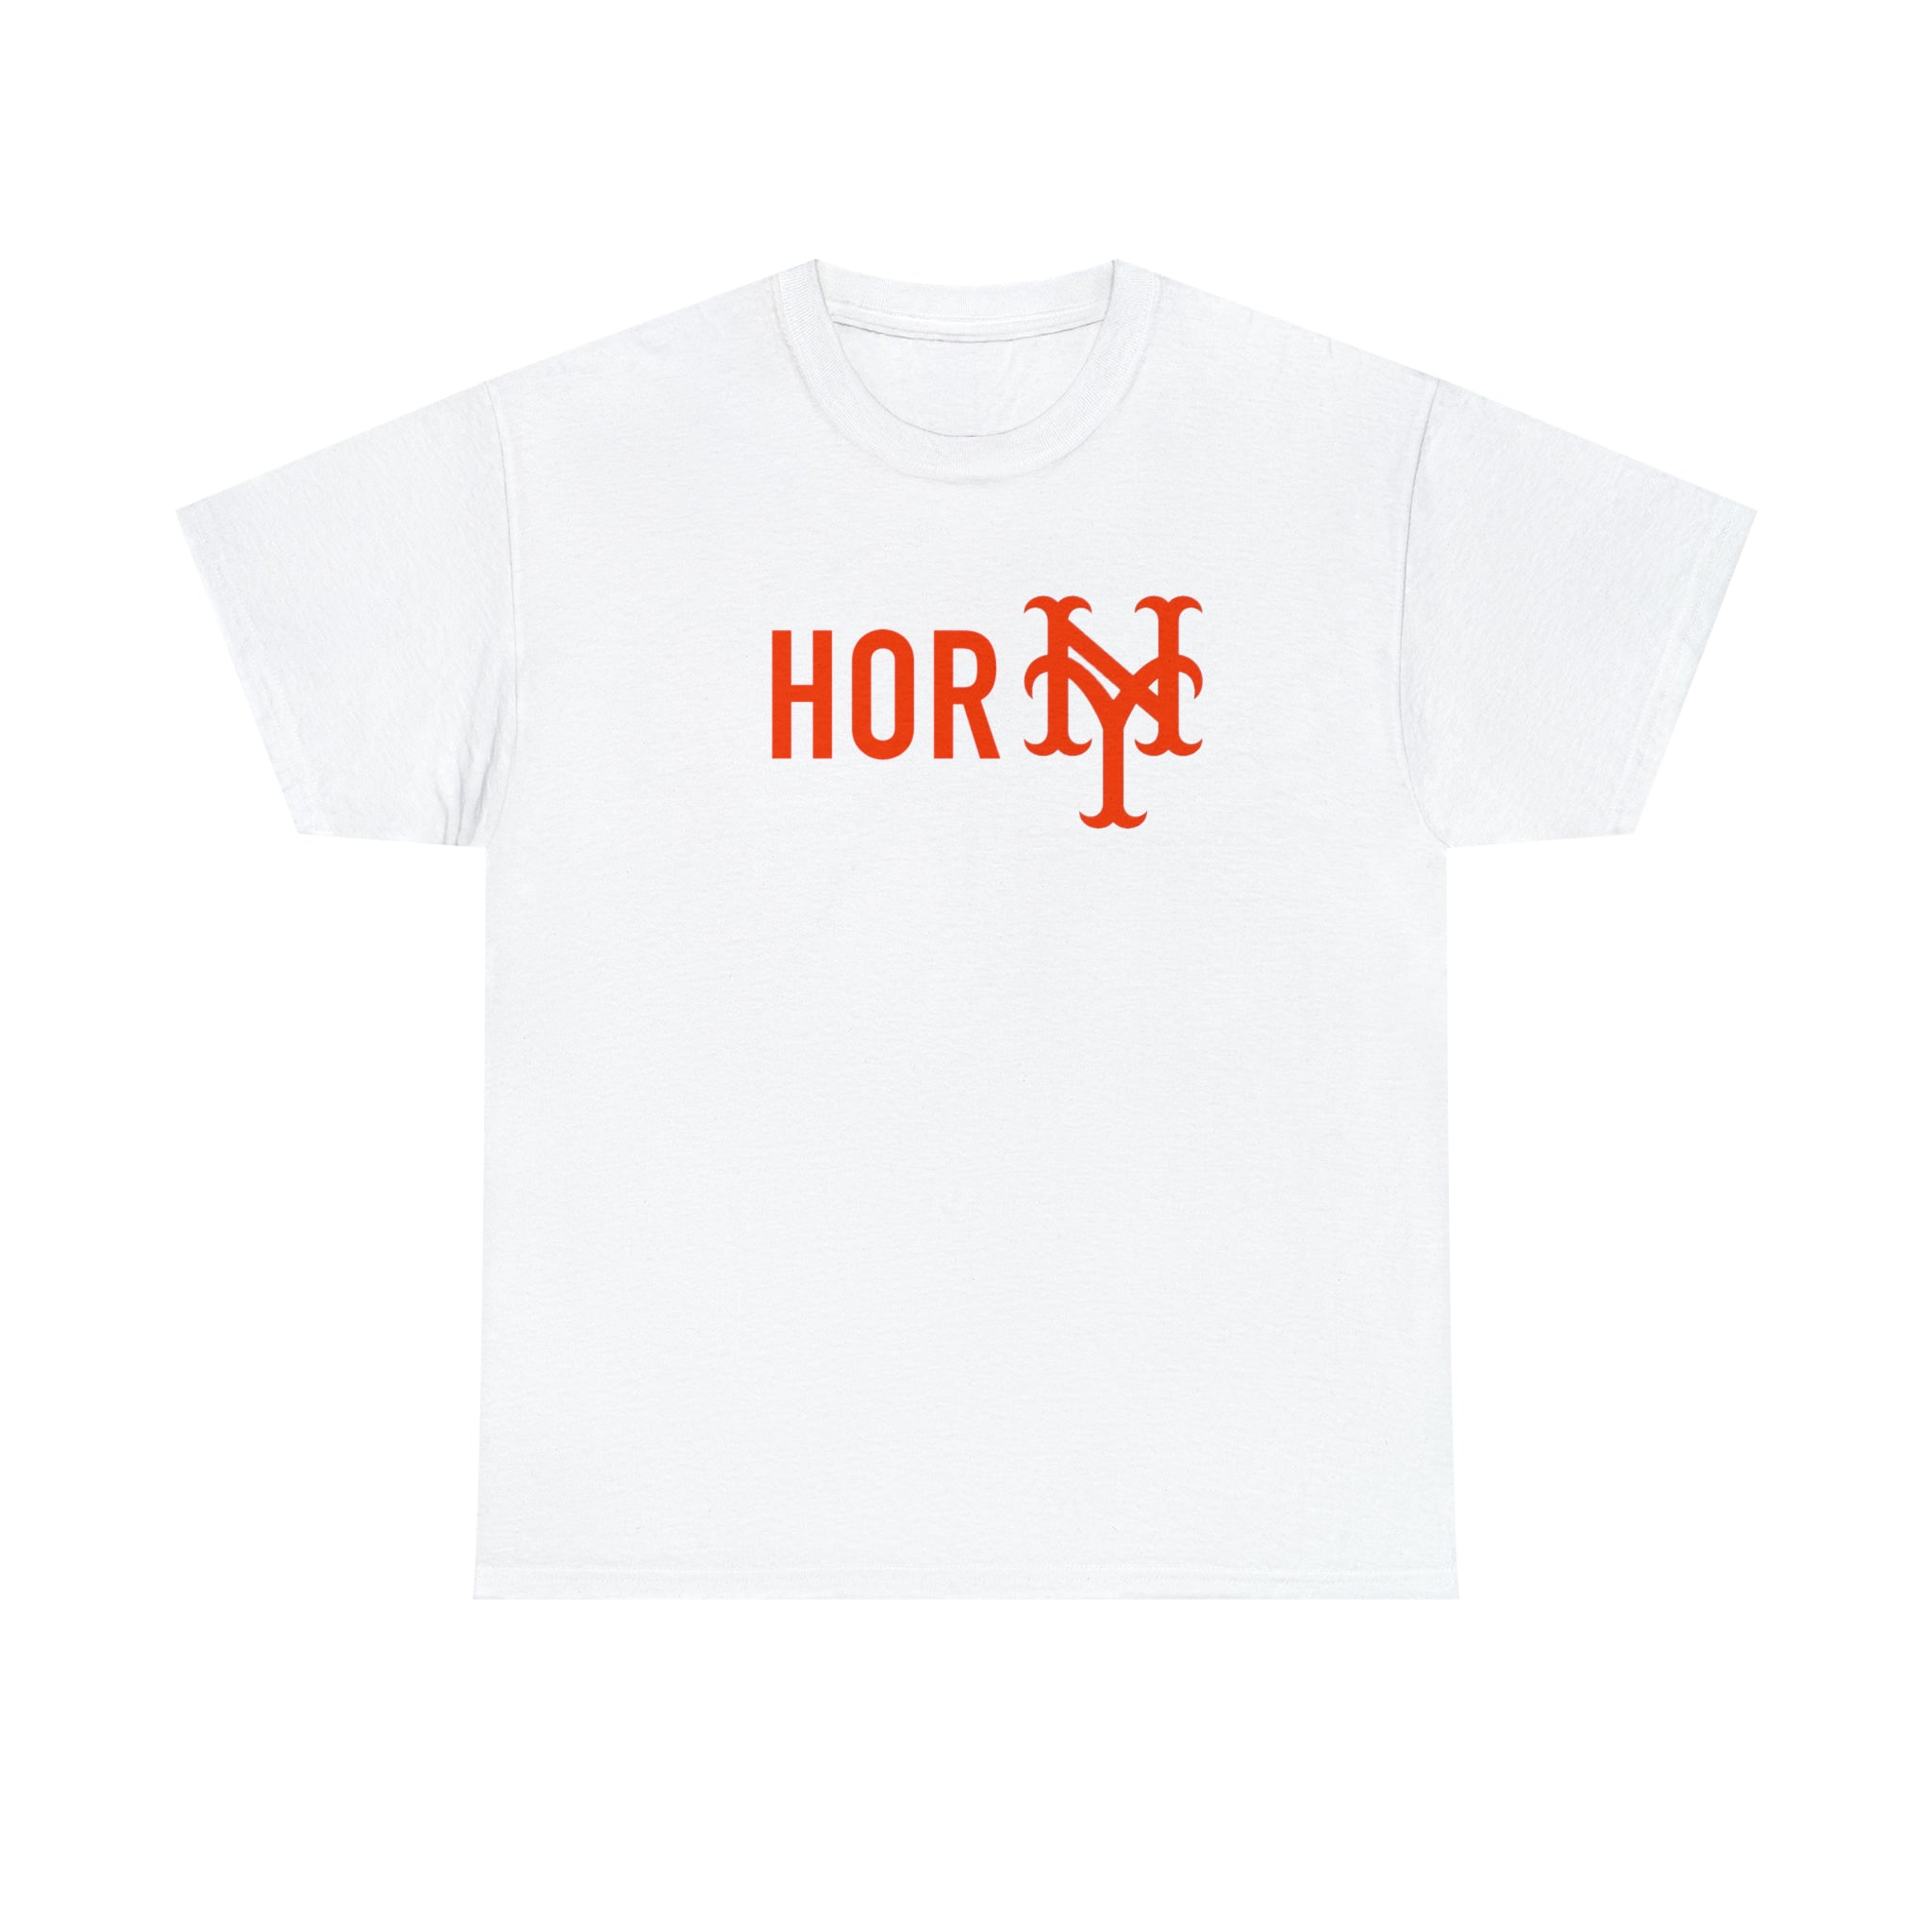 "Horny" NY Mets t